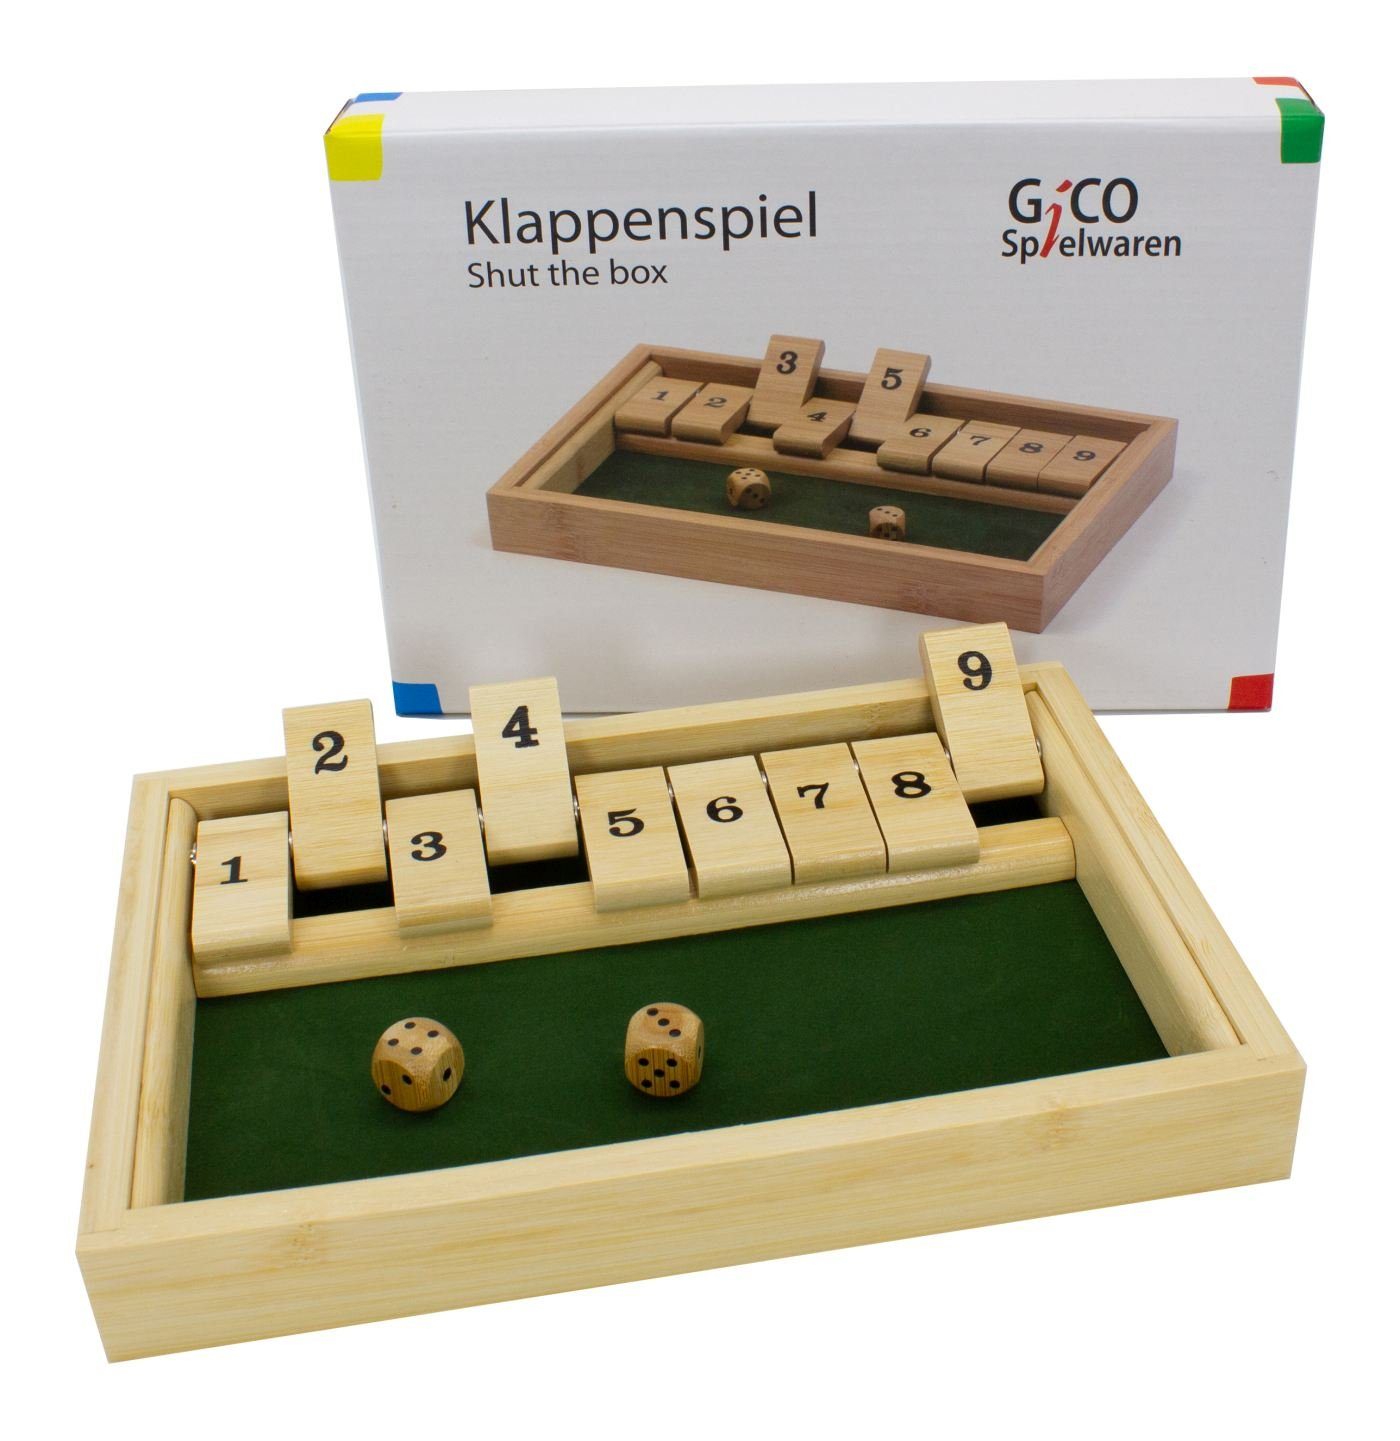 GICO Spielesammlung, GICO Klappenspiel / Shut the box aus Holz. Das bekannte Gesellschaftss